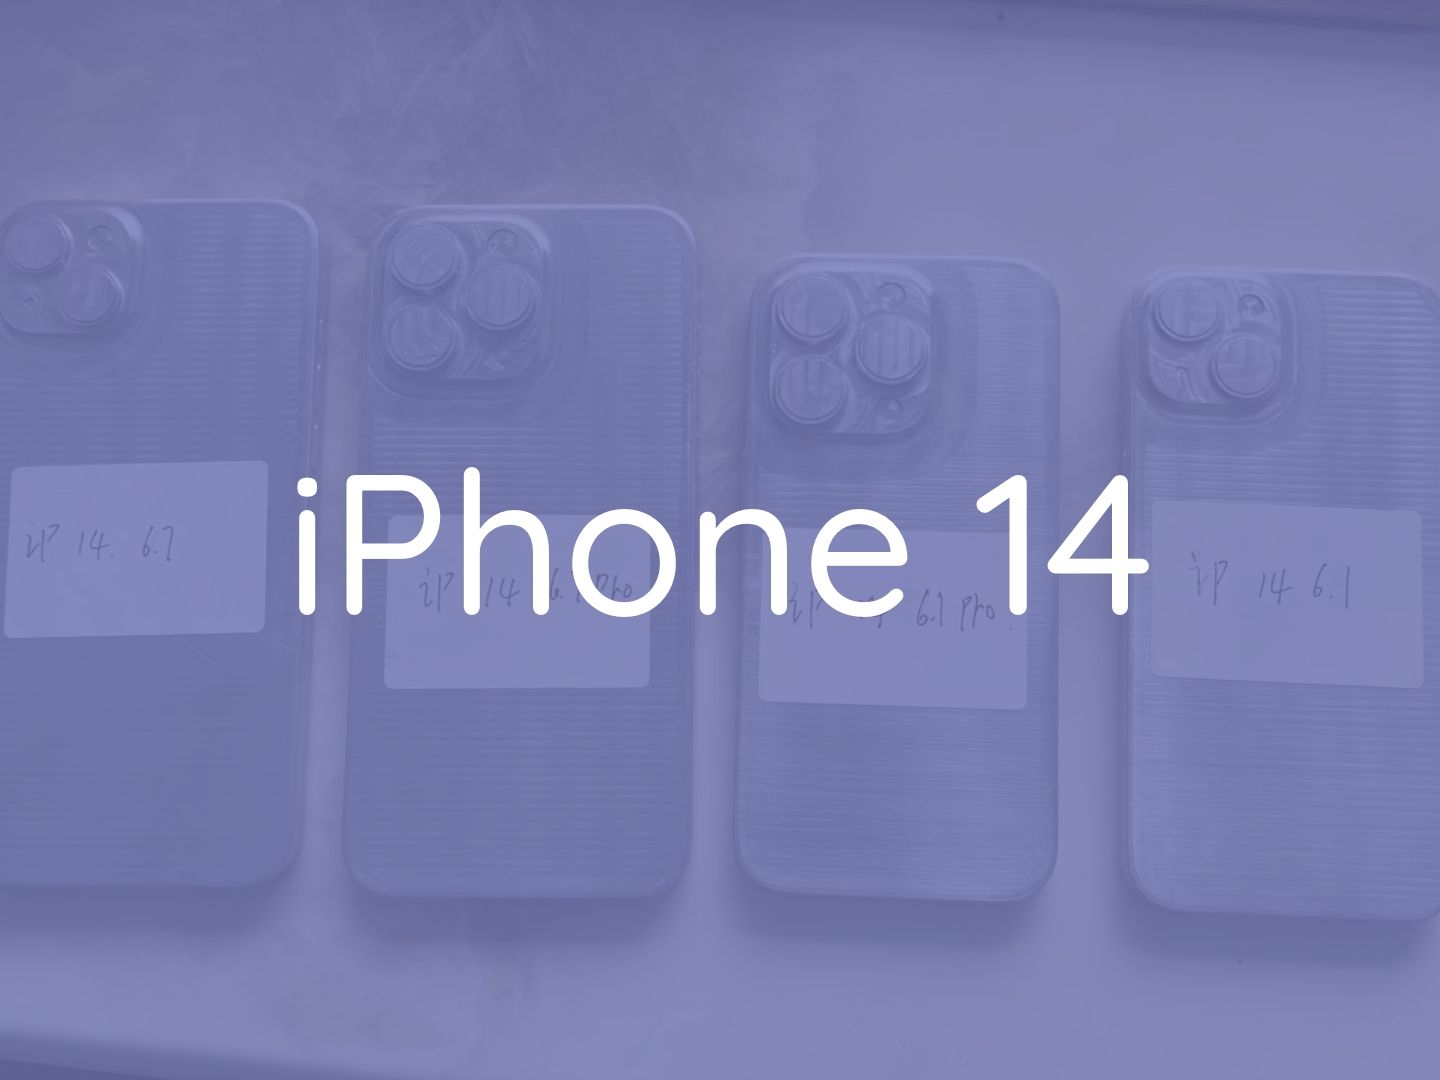 Moldes da série iPhone 14 são revelados! Adeus, iPhone mini...